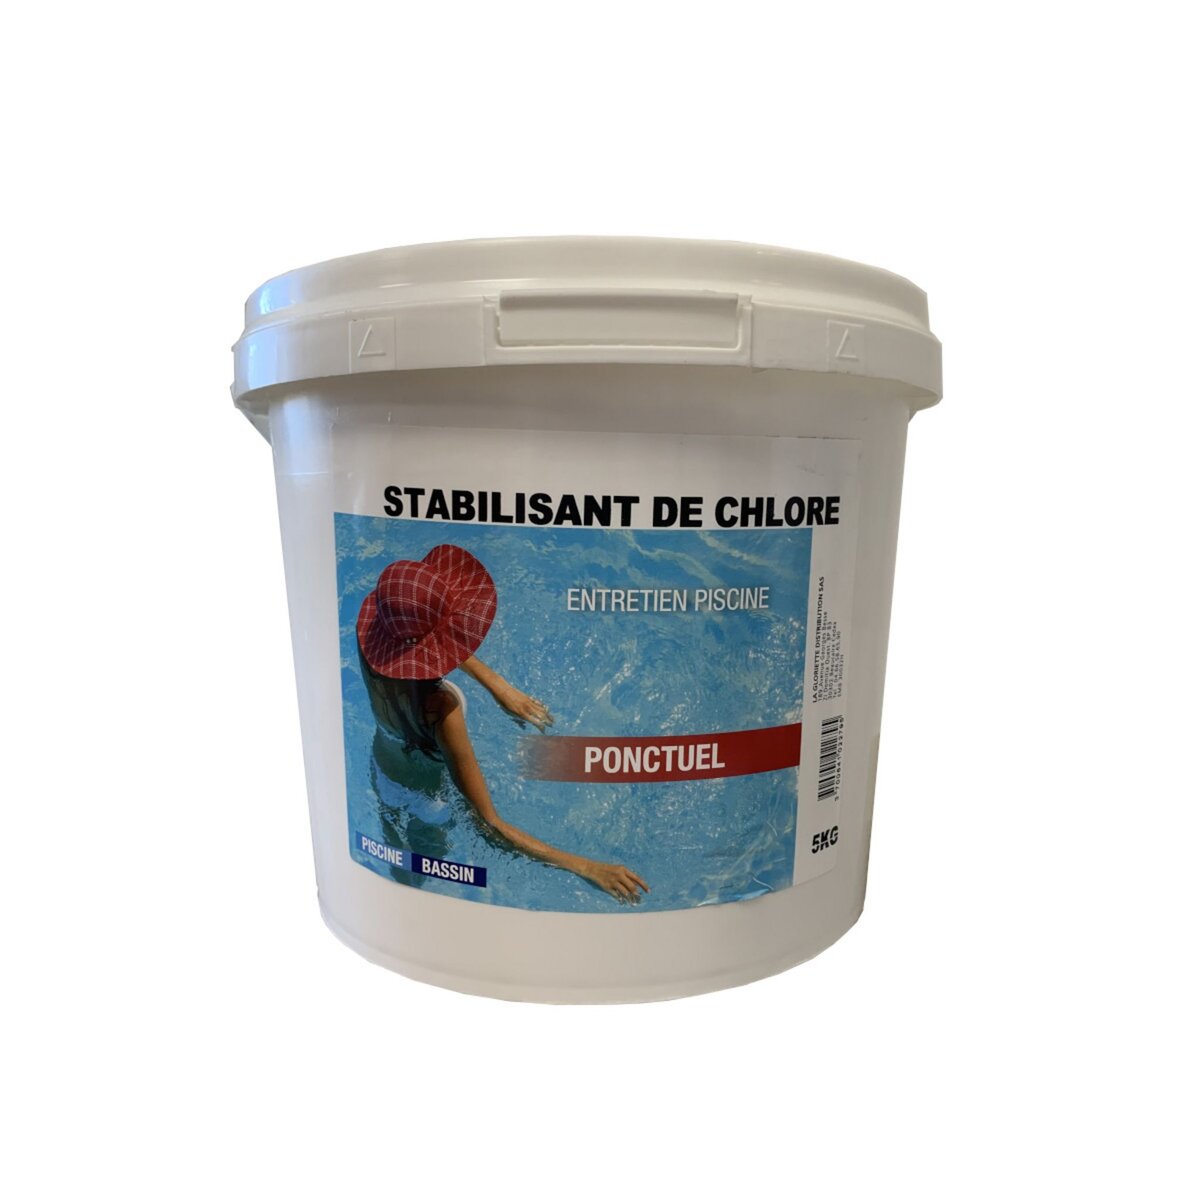 Nmp Stabilisant de chlore granulés 5kg - 35810bcm